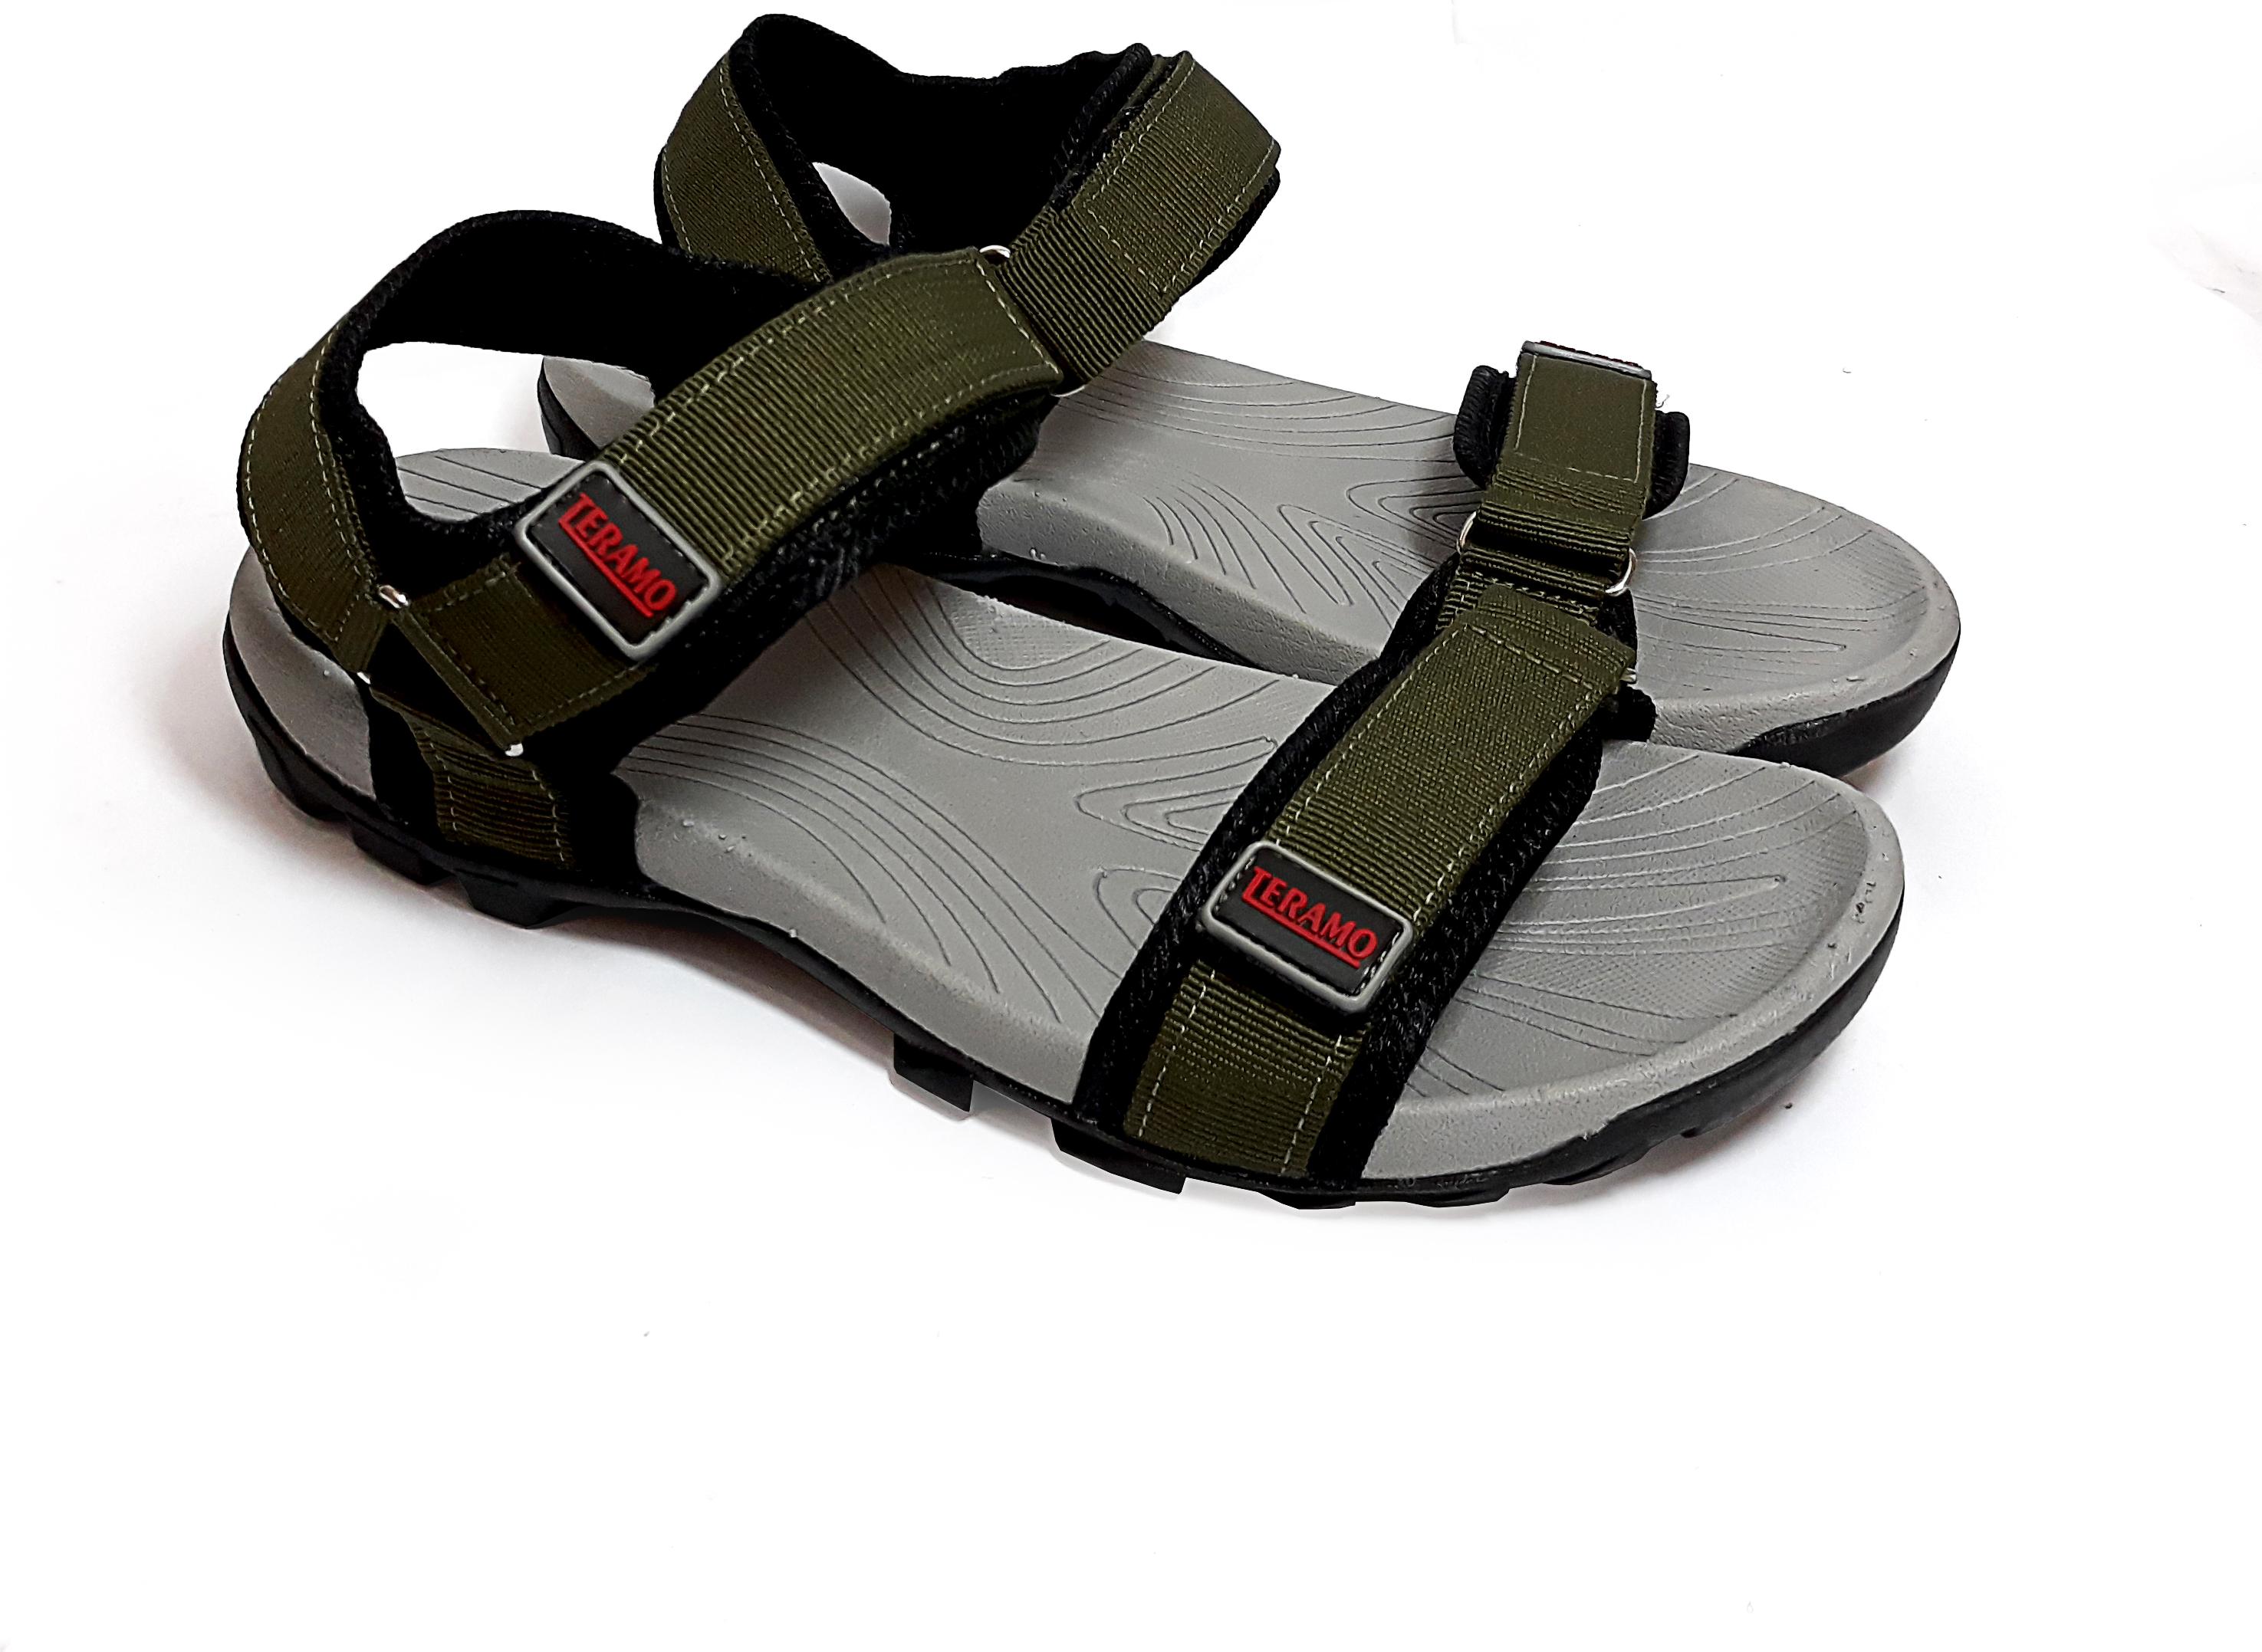 Giày sandal,dép sandal quai ngang, vải dù chắc chắn, đế cao su nguyên chất 100% có rãnh chống trượt an toàn trm.001